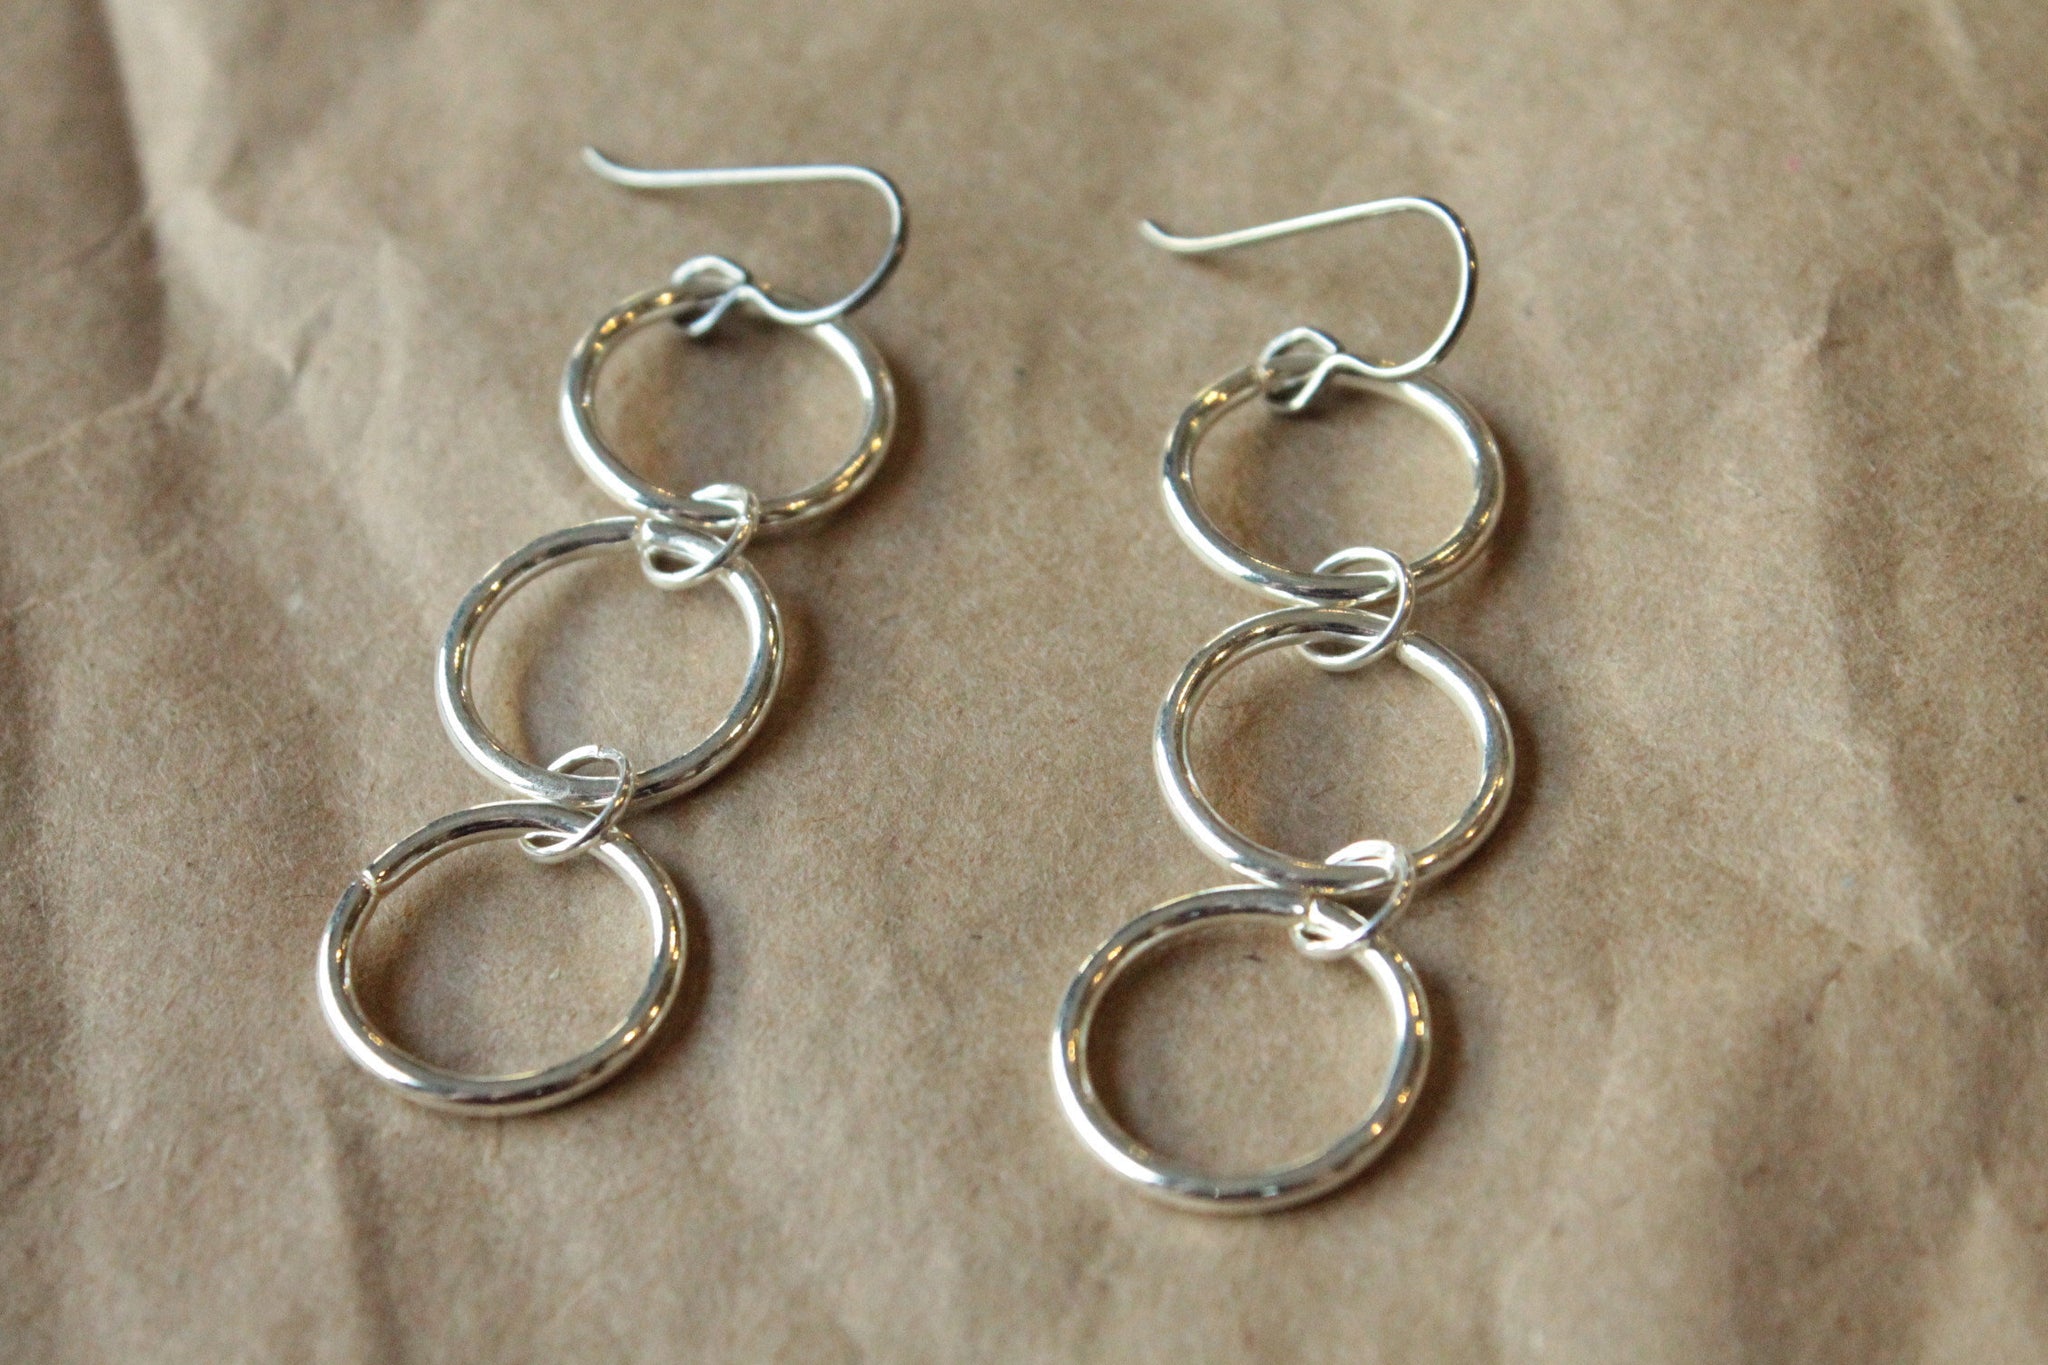 Titanium Earrings Hoops / Hoop Earrings for Sensitive Ears - Triple Chain Silver Plated Hoop Dangle